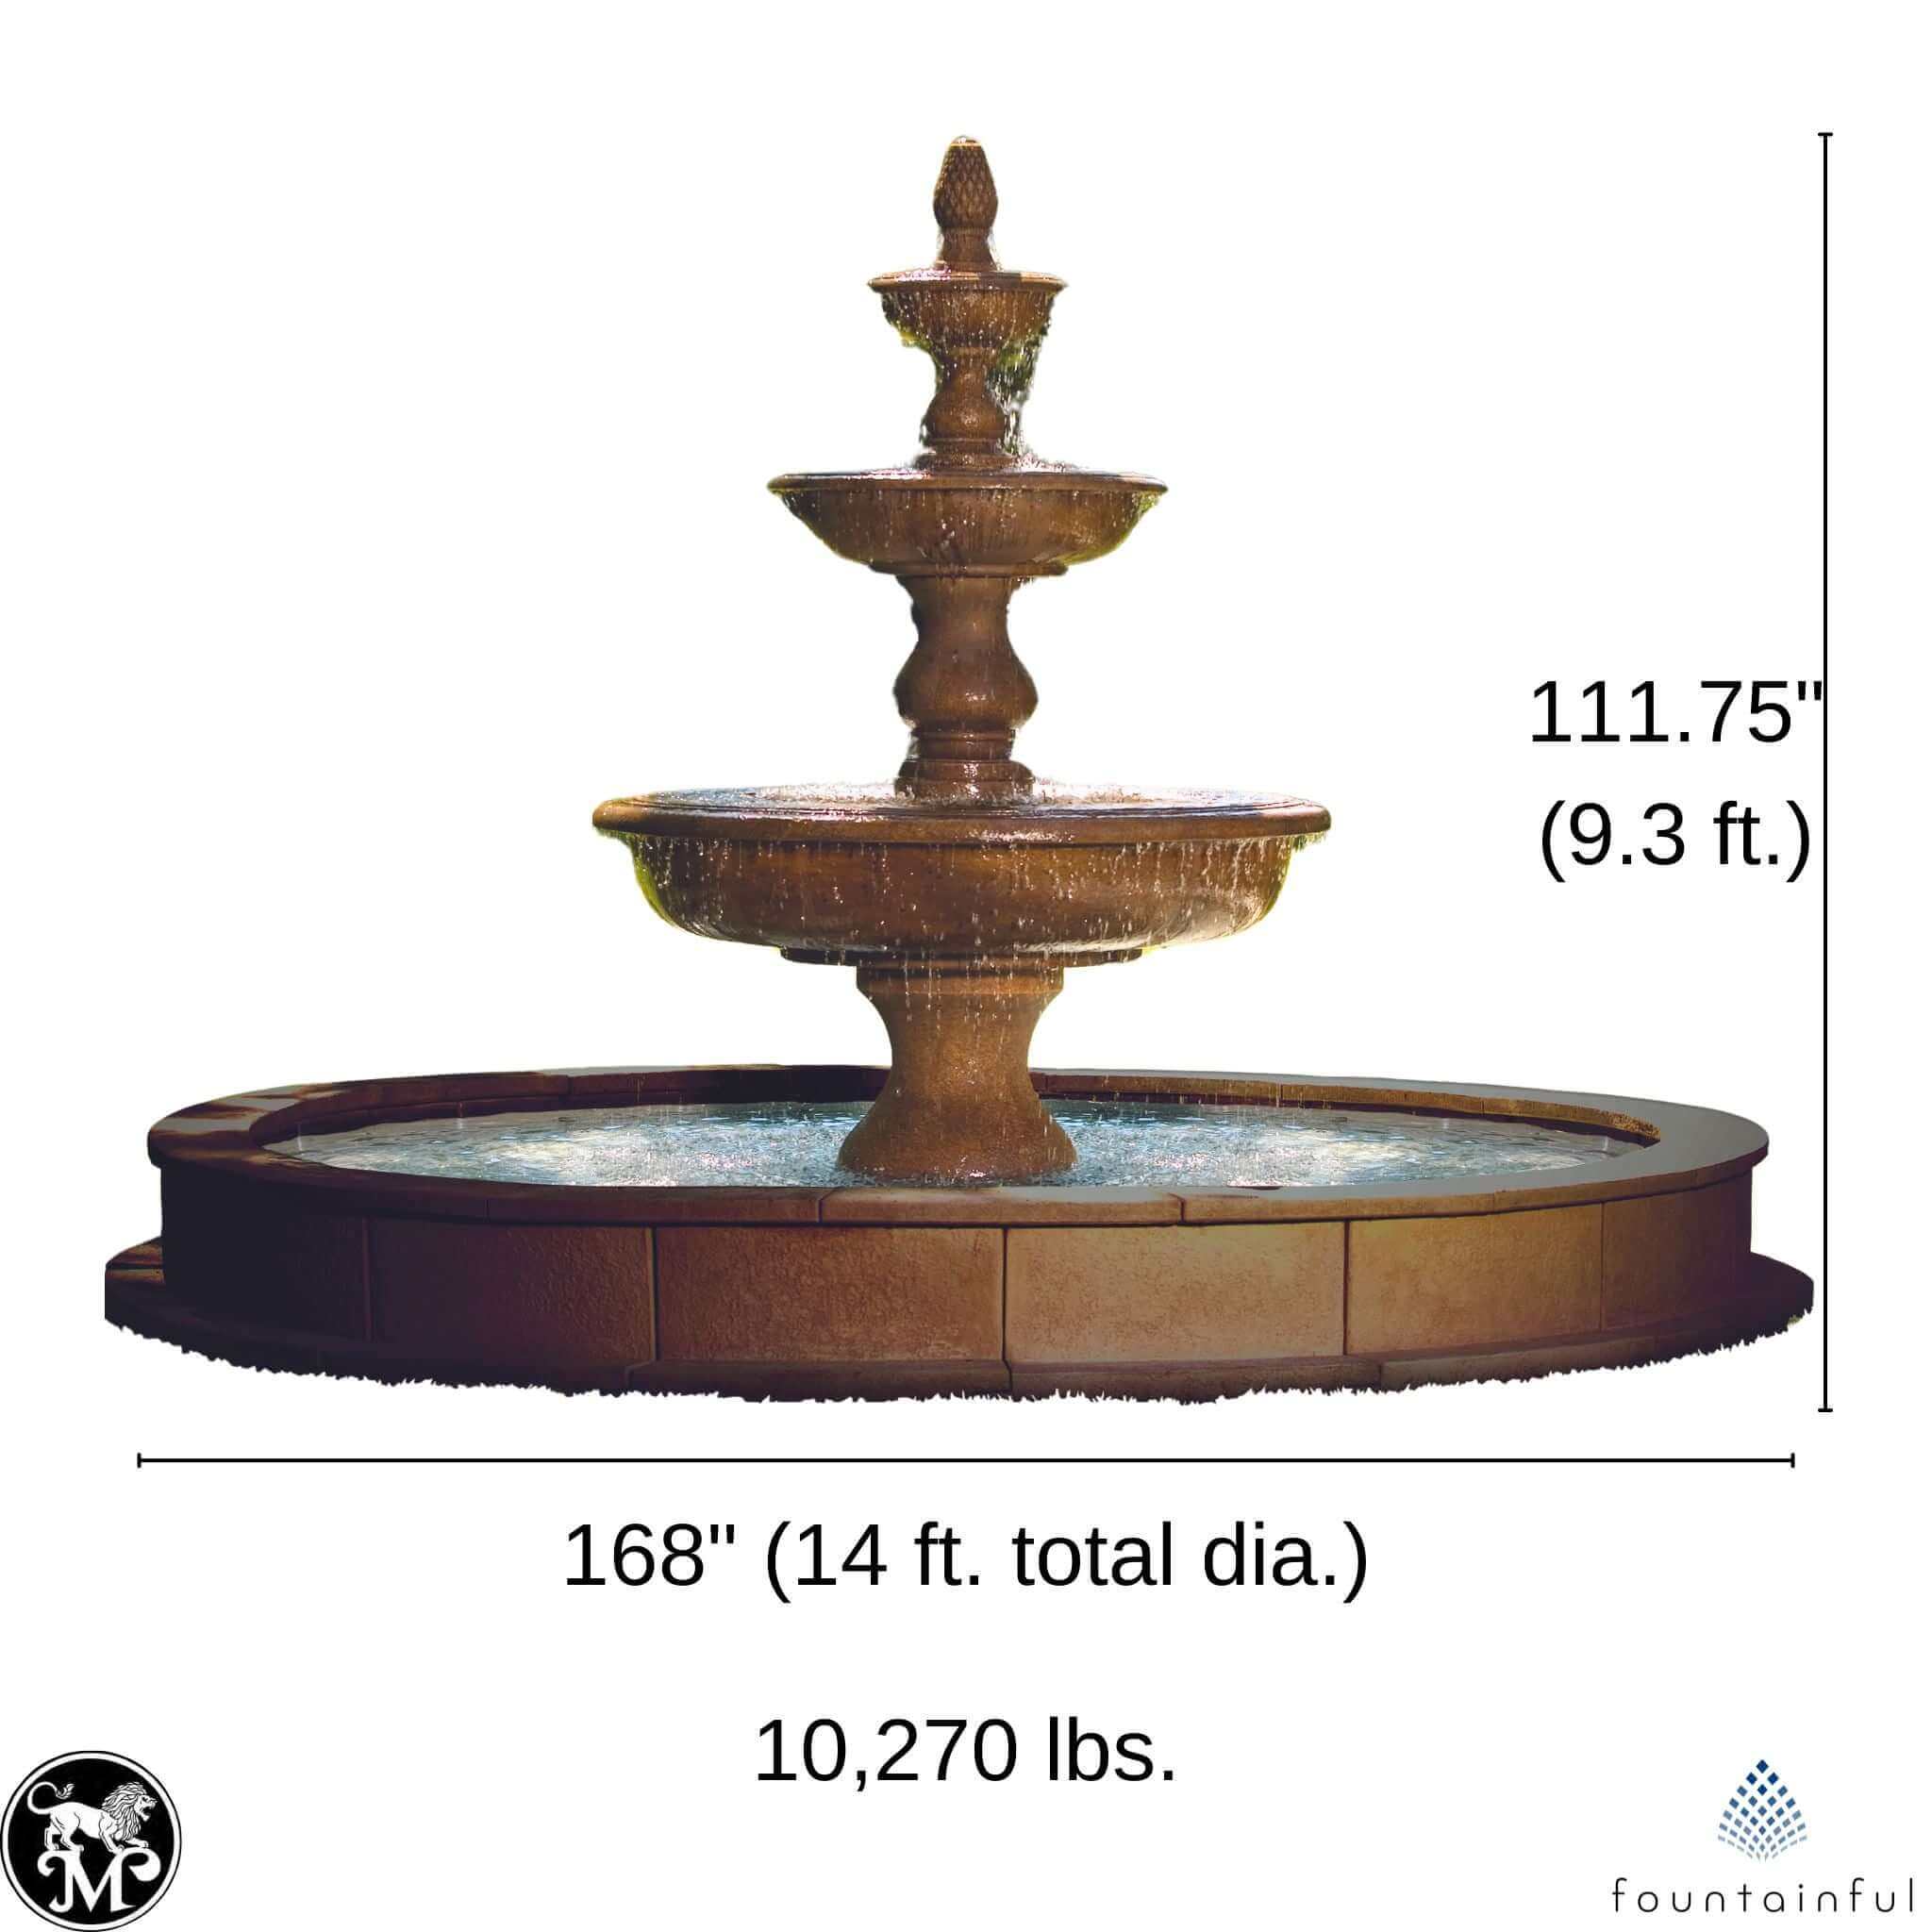 The Monticello 3-Tier Concrete Fountain w/Pool - Massarellis #3703